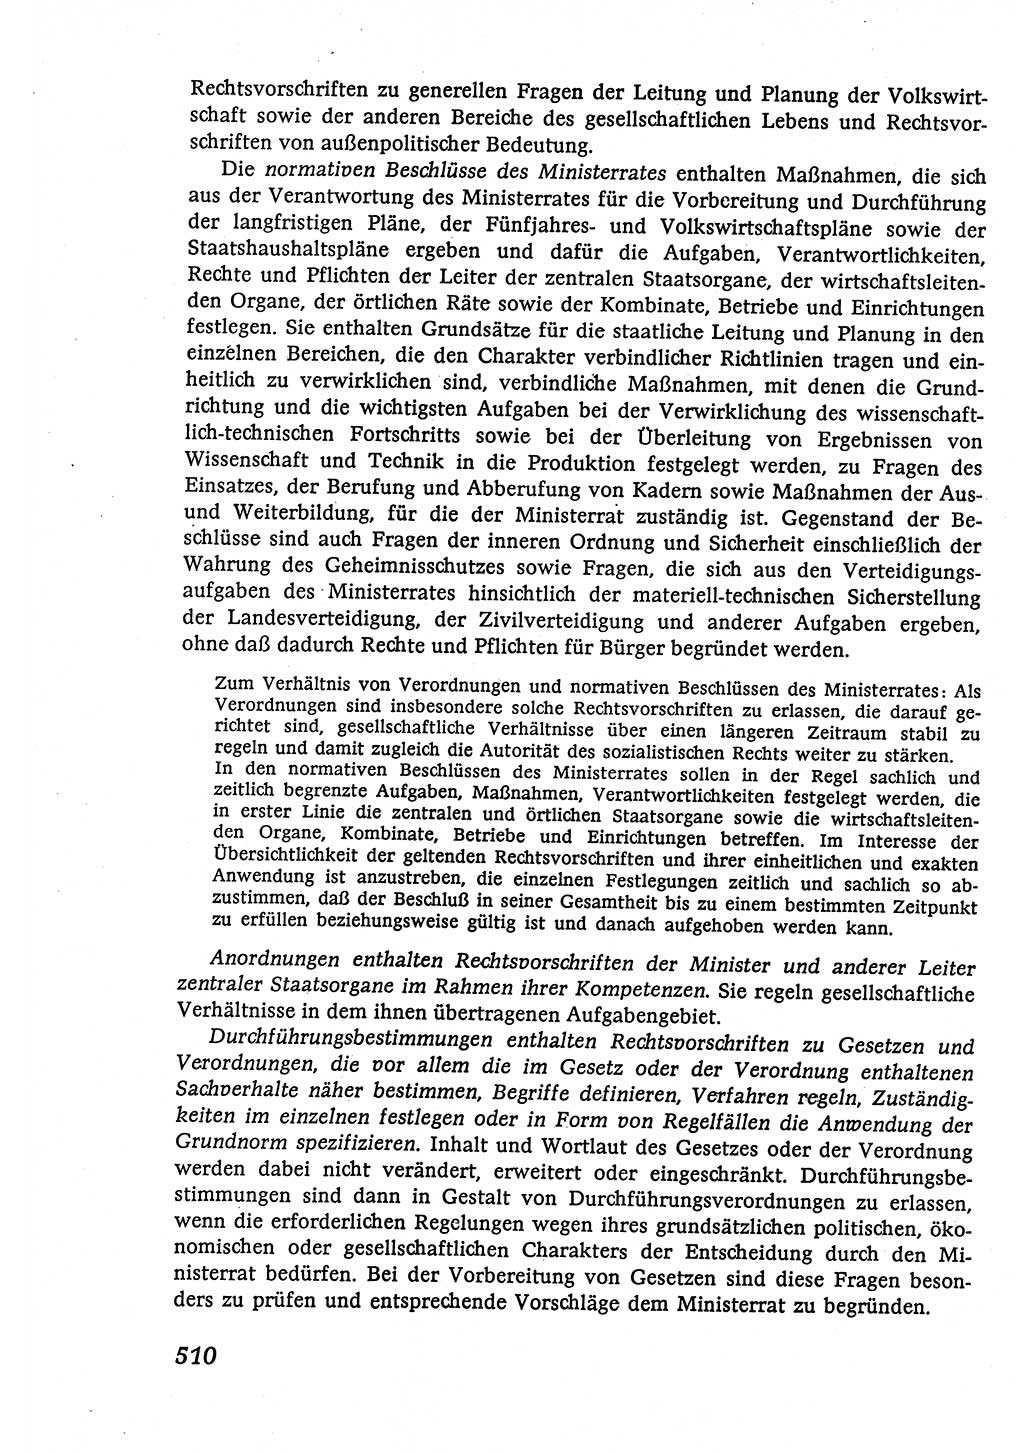 Marxistisch-leninistische (ML) Staats- und Rechtstheorie [Deutsche Demokratische Republik (DDR)], Lehrbuch 1980, Seite 510 (ML St.-R.-Th. DDR Lb. 1980, S. 510)